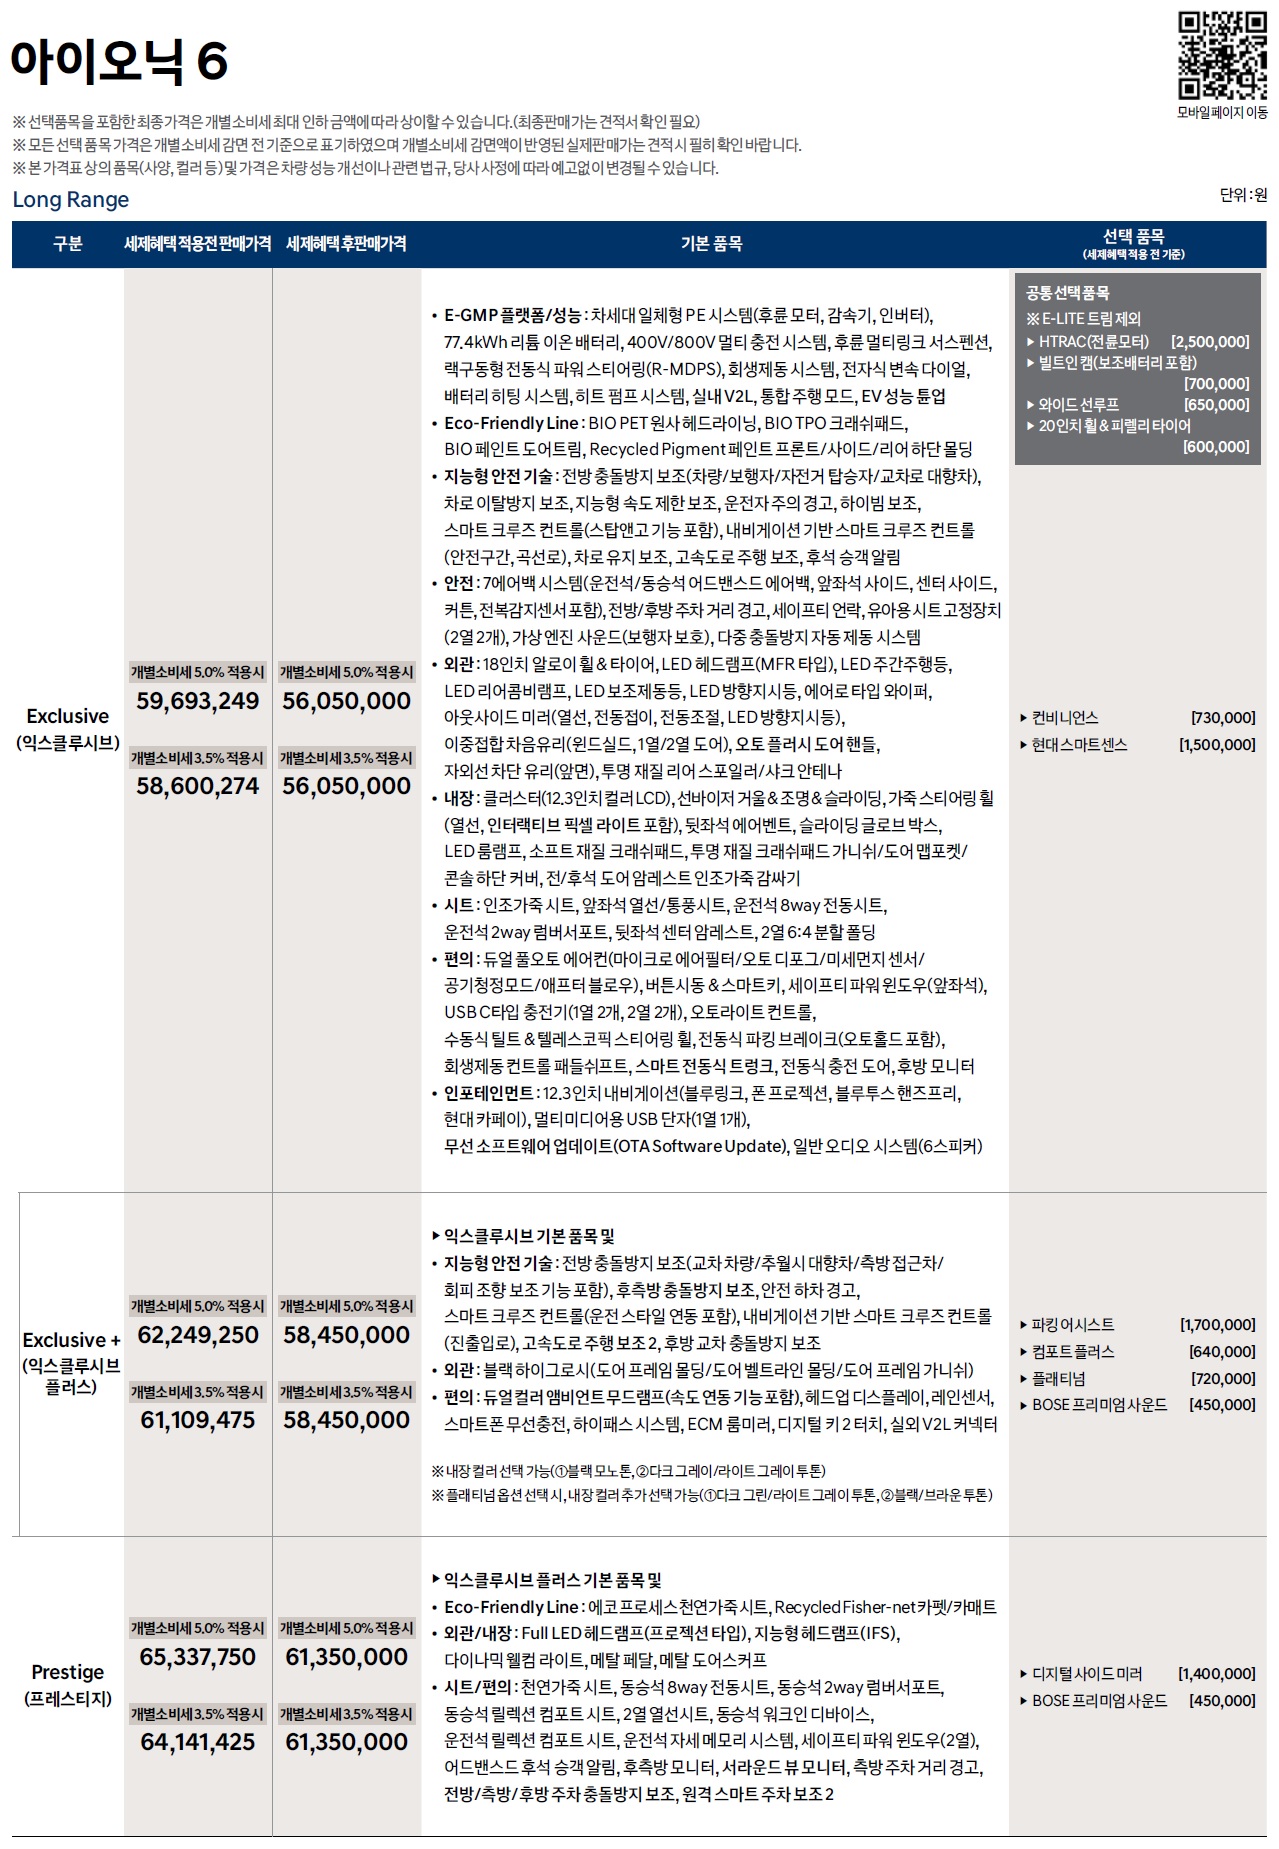 아이오닉6 가격표 - 2022년 09월 (출시) -1.jpg